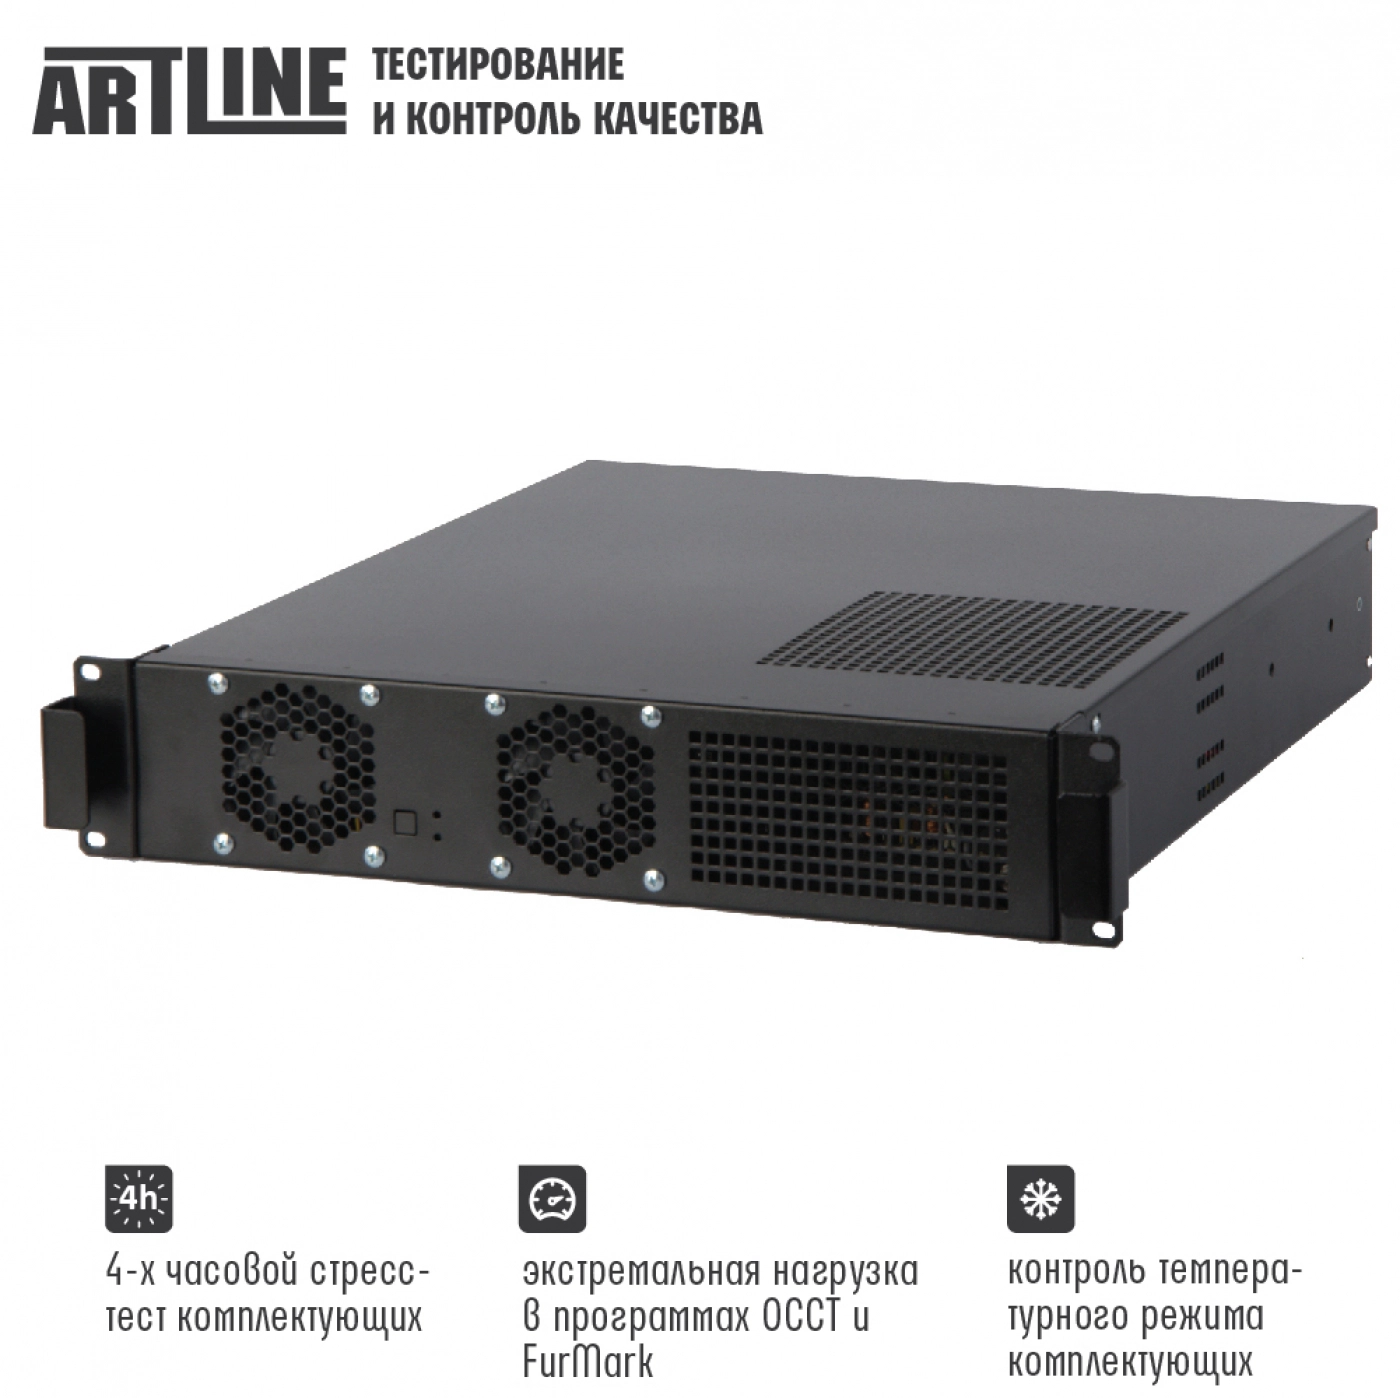 Купить Сервер ARTLINE Business R15v12 - фото 4